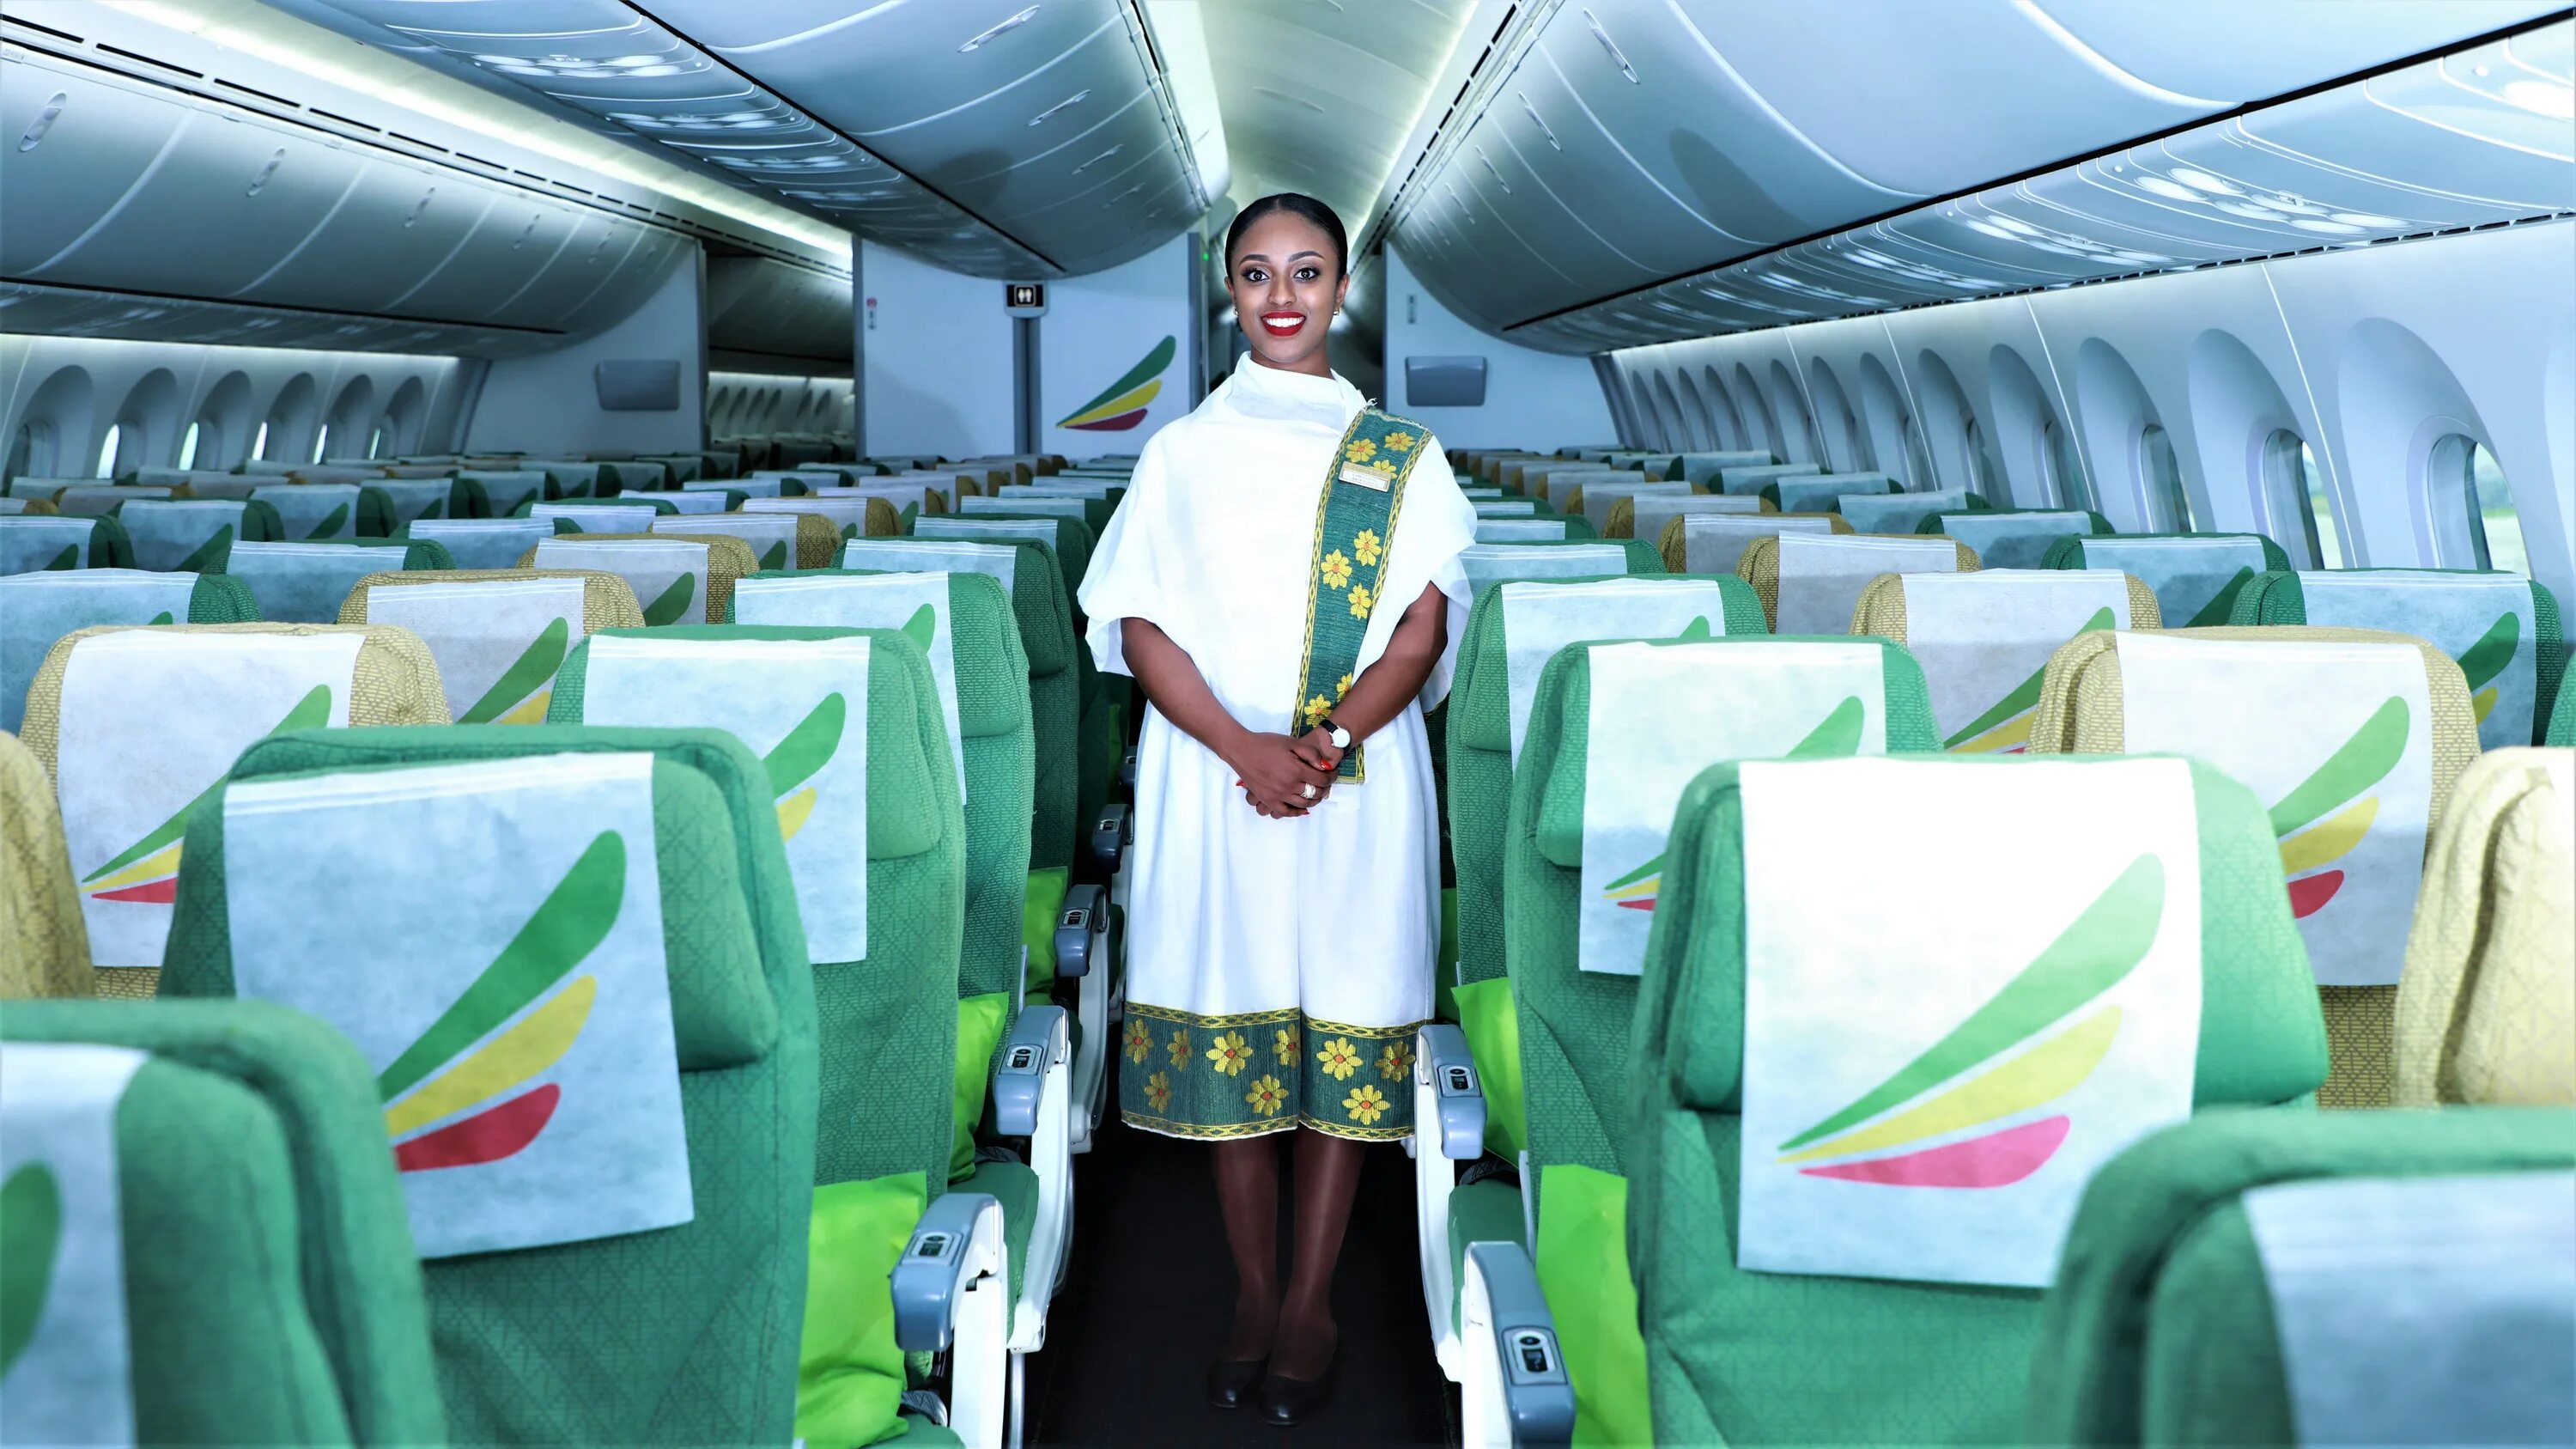 Et 761 ethiopian airlines. Эфиопия Эйрлайнс. Авиакомпания Ethiopian Airlines. Рейс Москва Аддис Абеба авиакомпания. Эфиопиан Эйрлайнс самолет внутри.